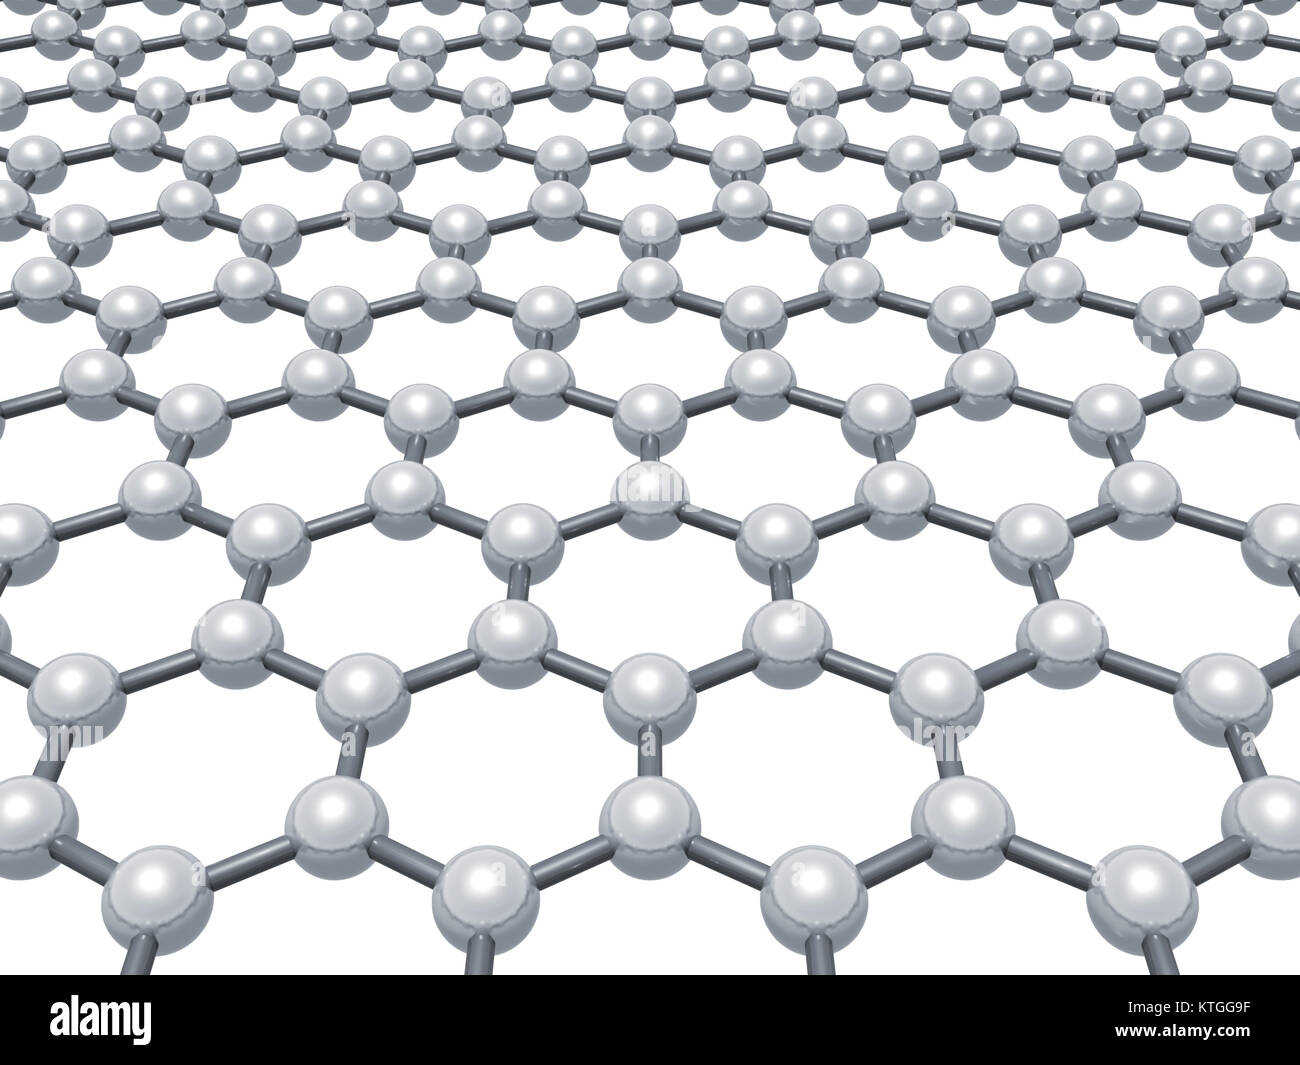 Graphenschicht, schematische molekularen Modell der hexagonalen Gitter auf weißem Hintergrund, 3D-Rendering illustration Stockfoto